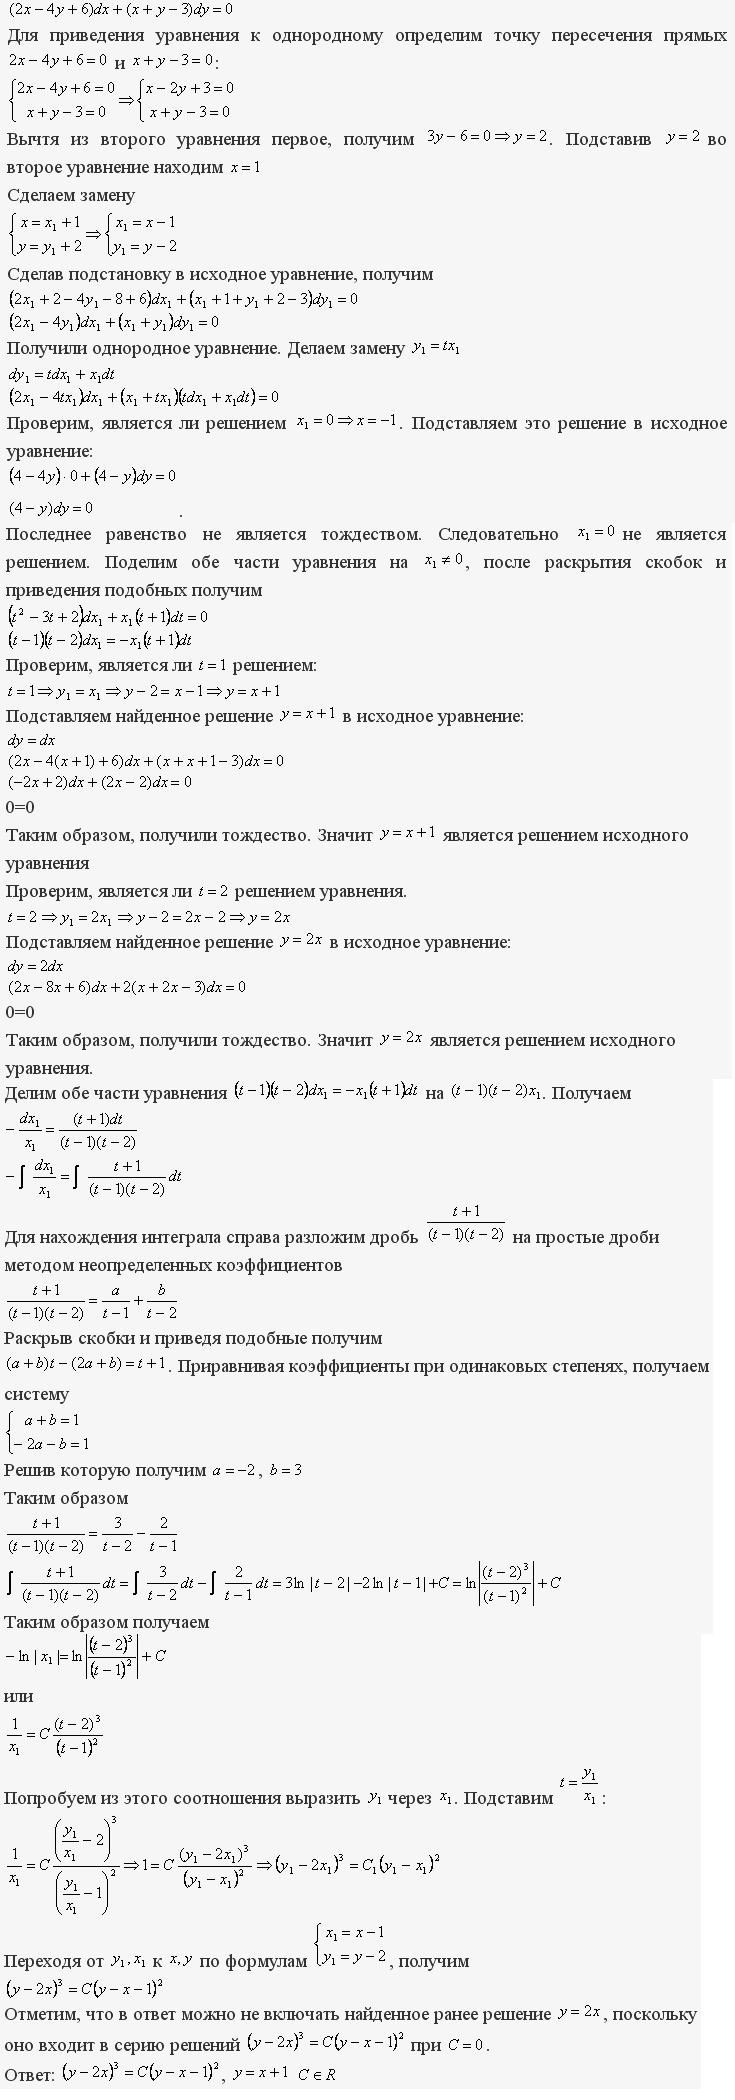 Однородные уравнения - решение задачи 113